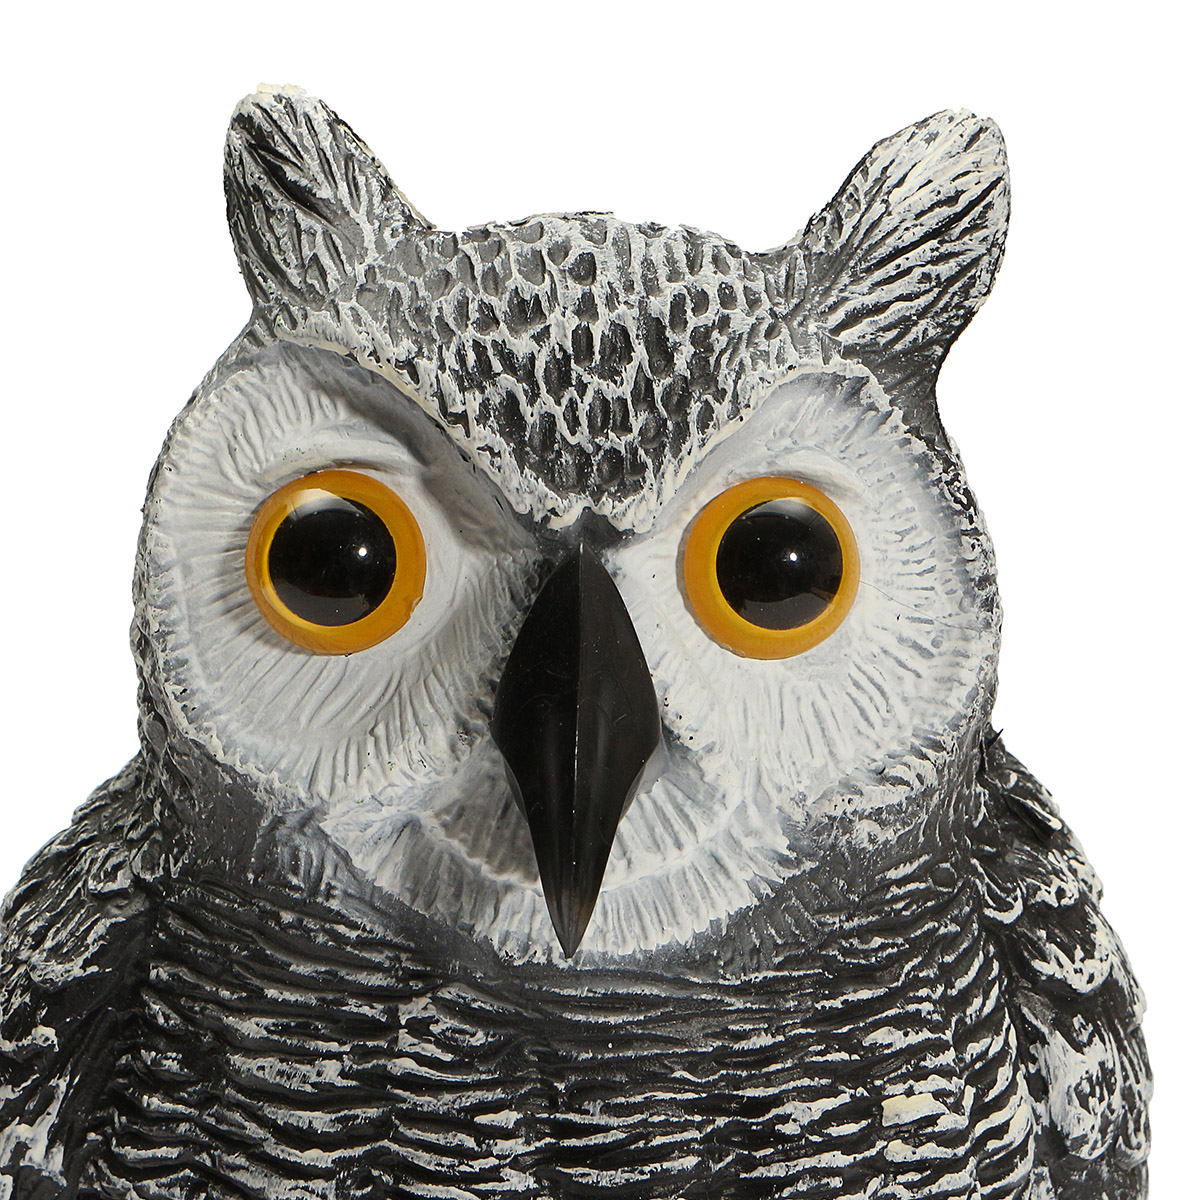 Realistic-Bird-Scarer-Owl-Decoy-Repellent-Pest-Scarecrow-Outdoor-Garden-Yard-1865810-6